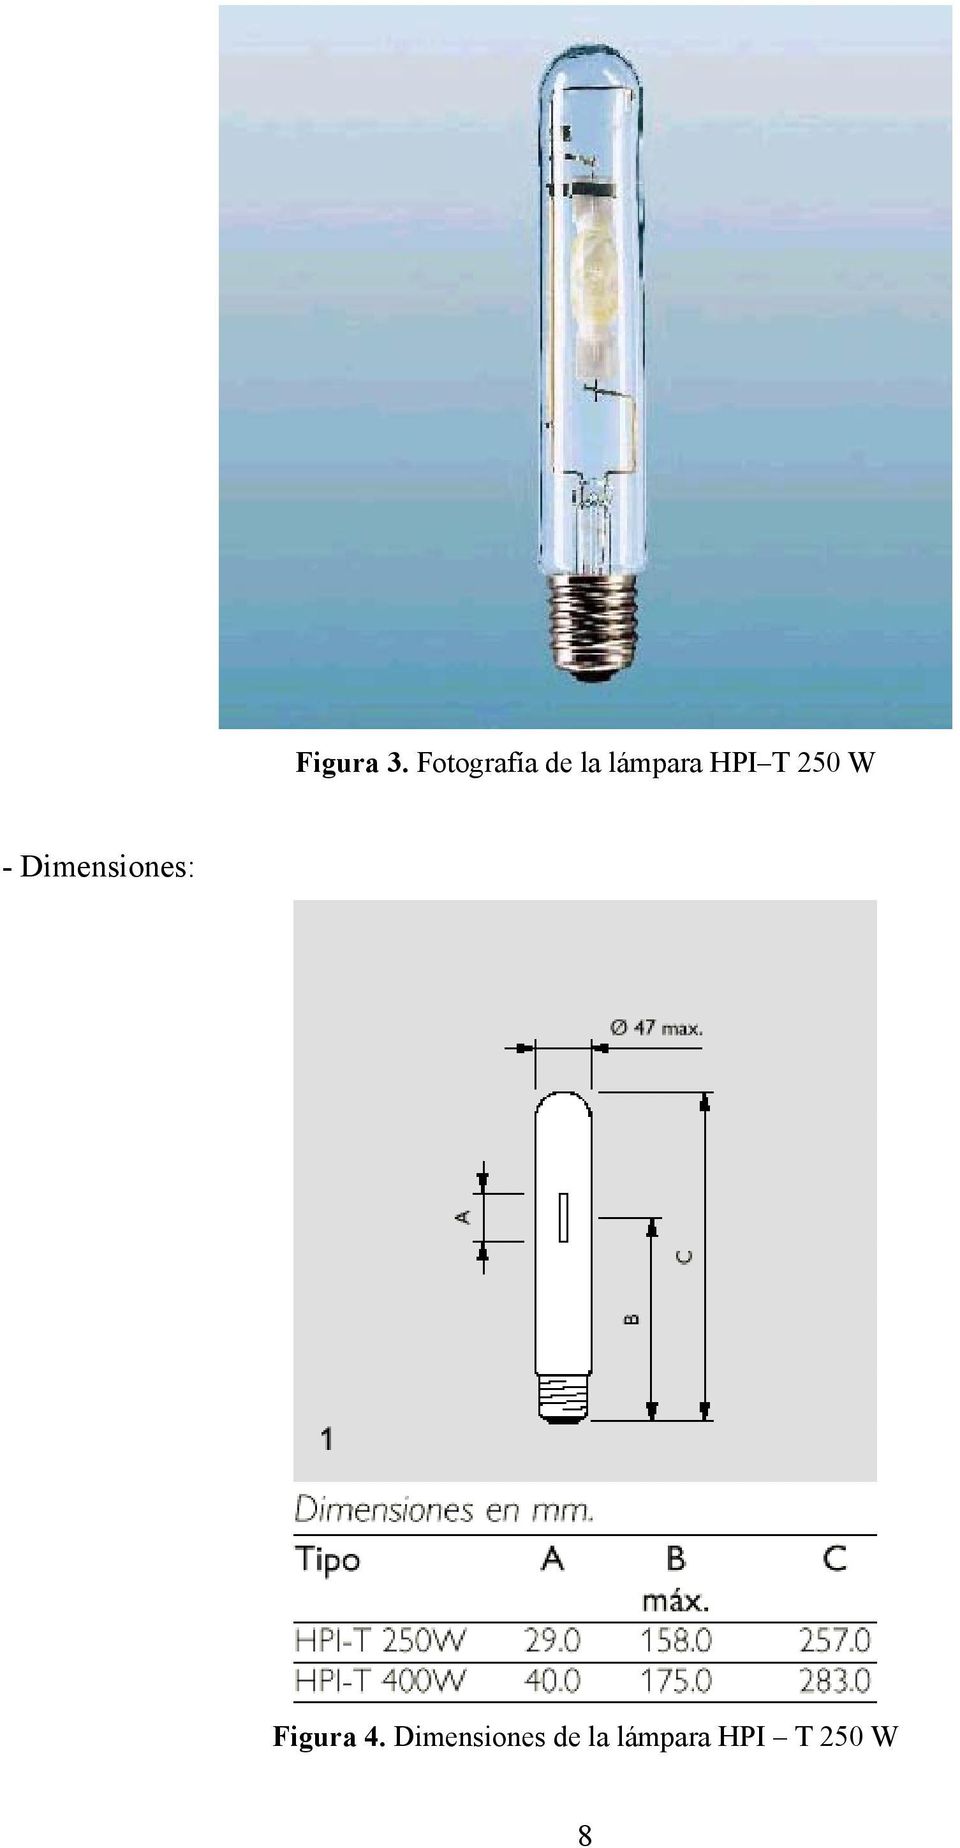 HPI T 250 W - Dimensiones: